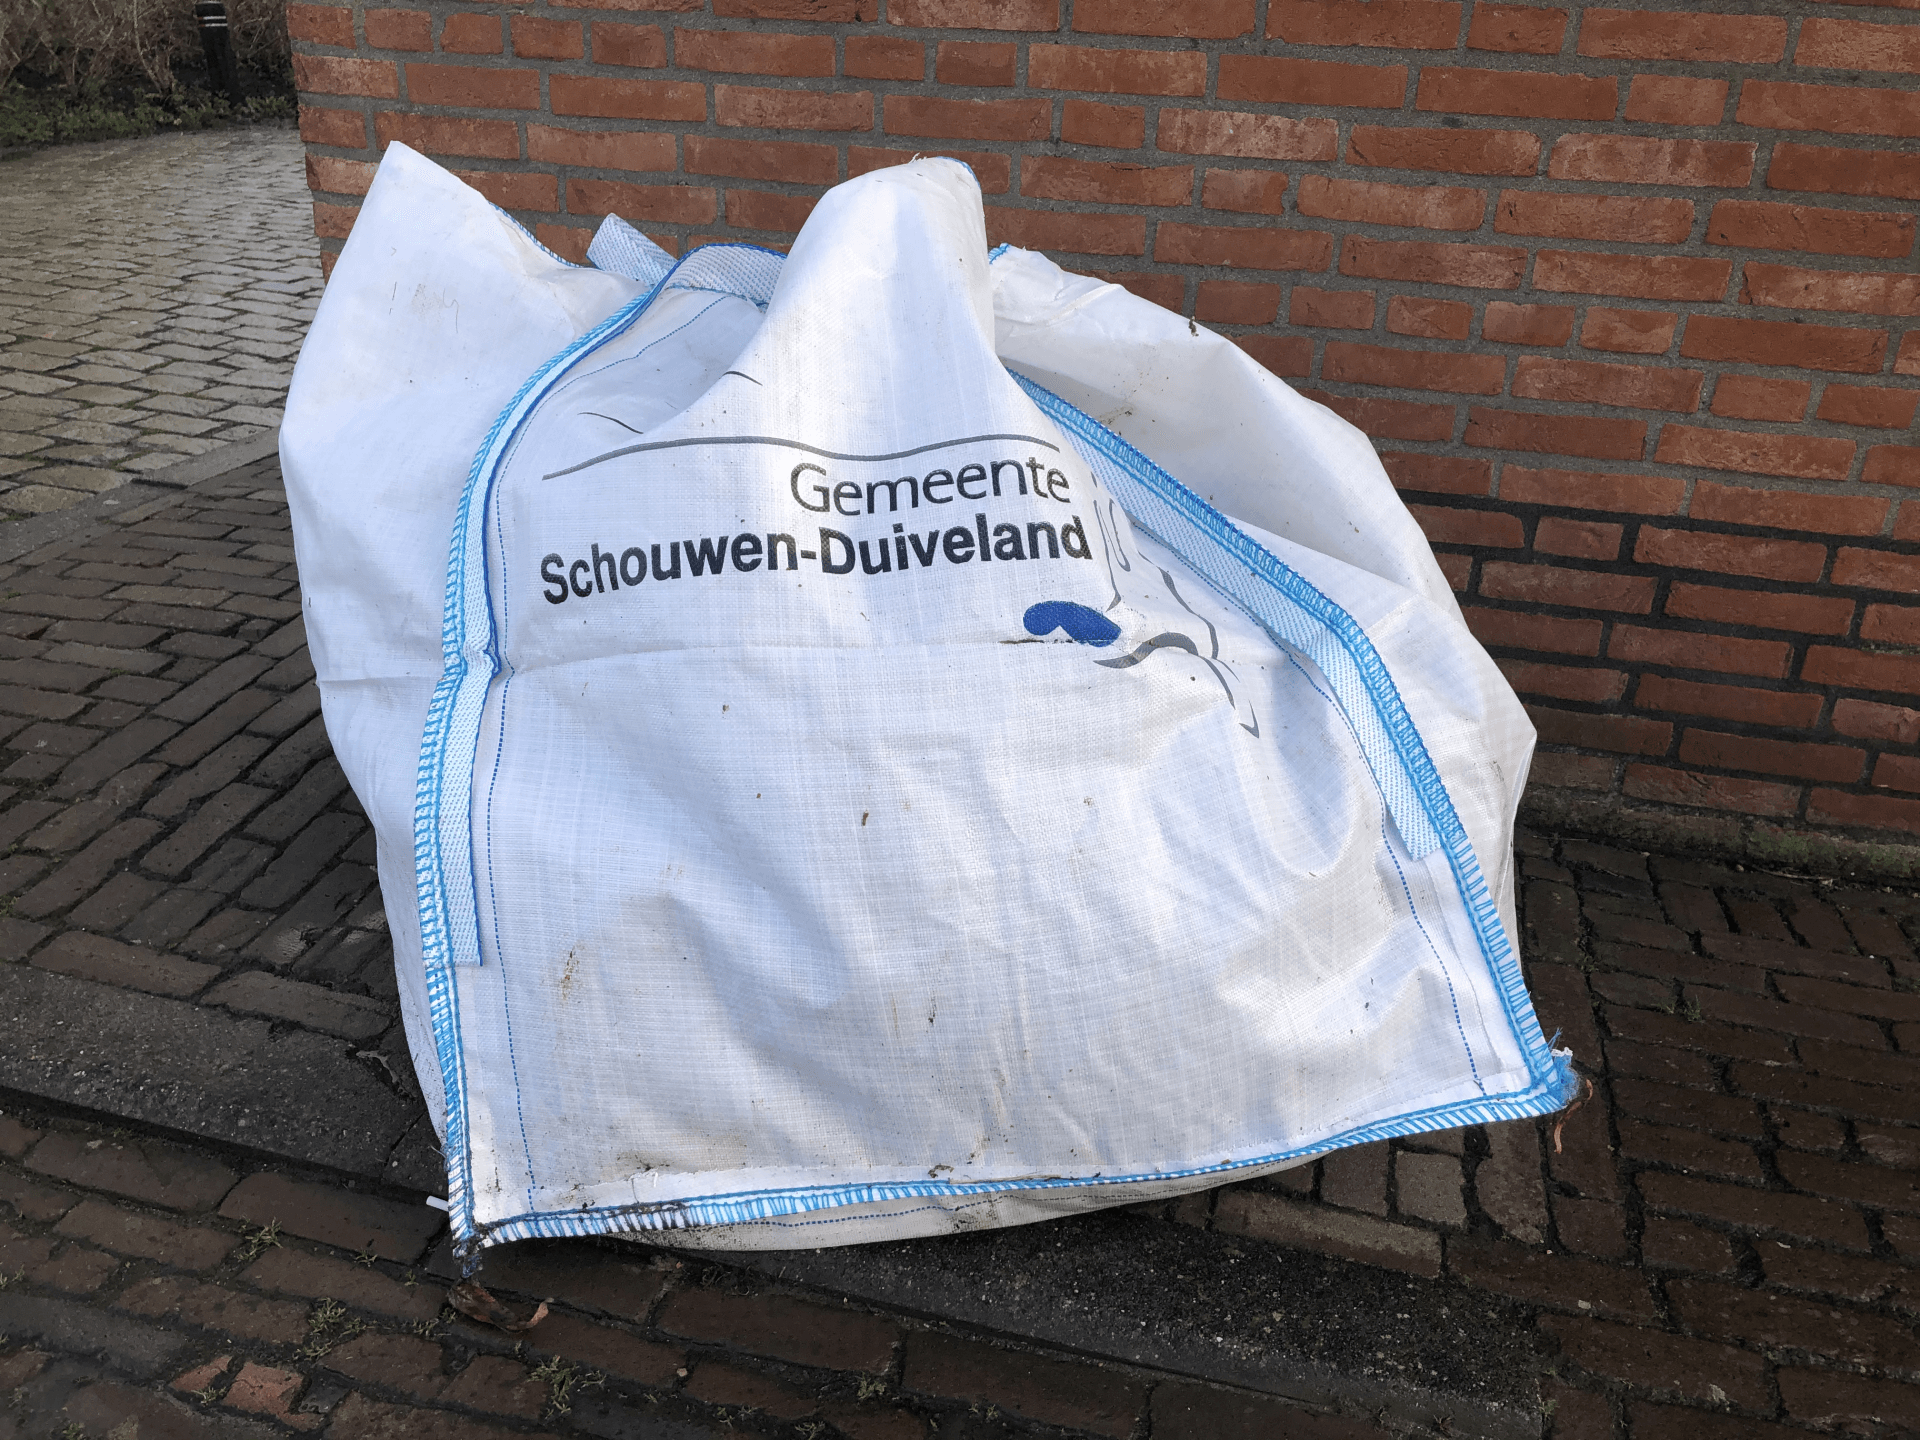 Big Bag foto: Zierikzee-Monumentenstad.nl